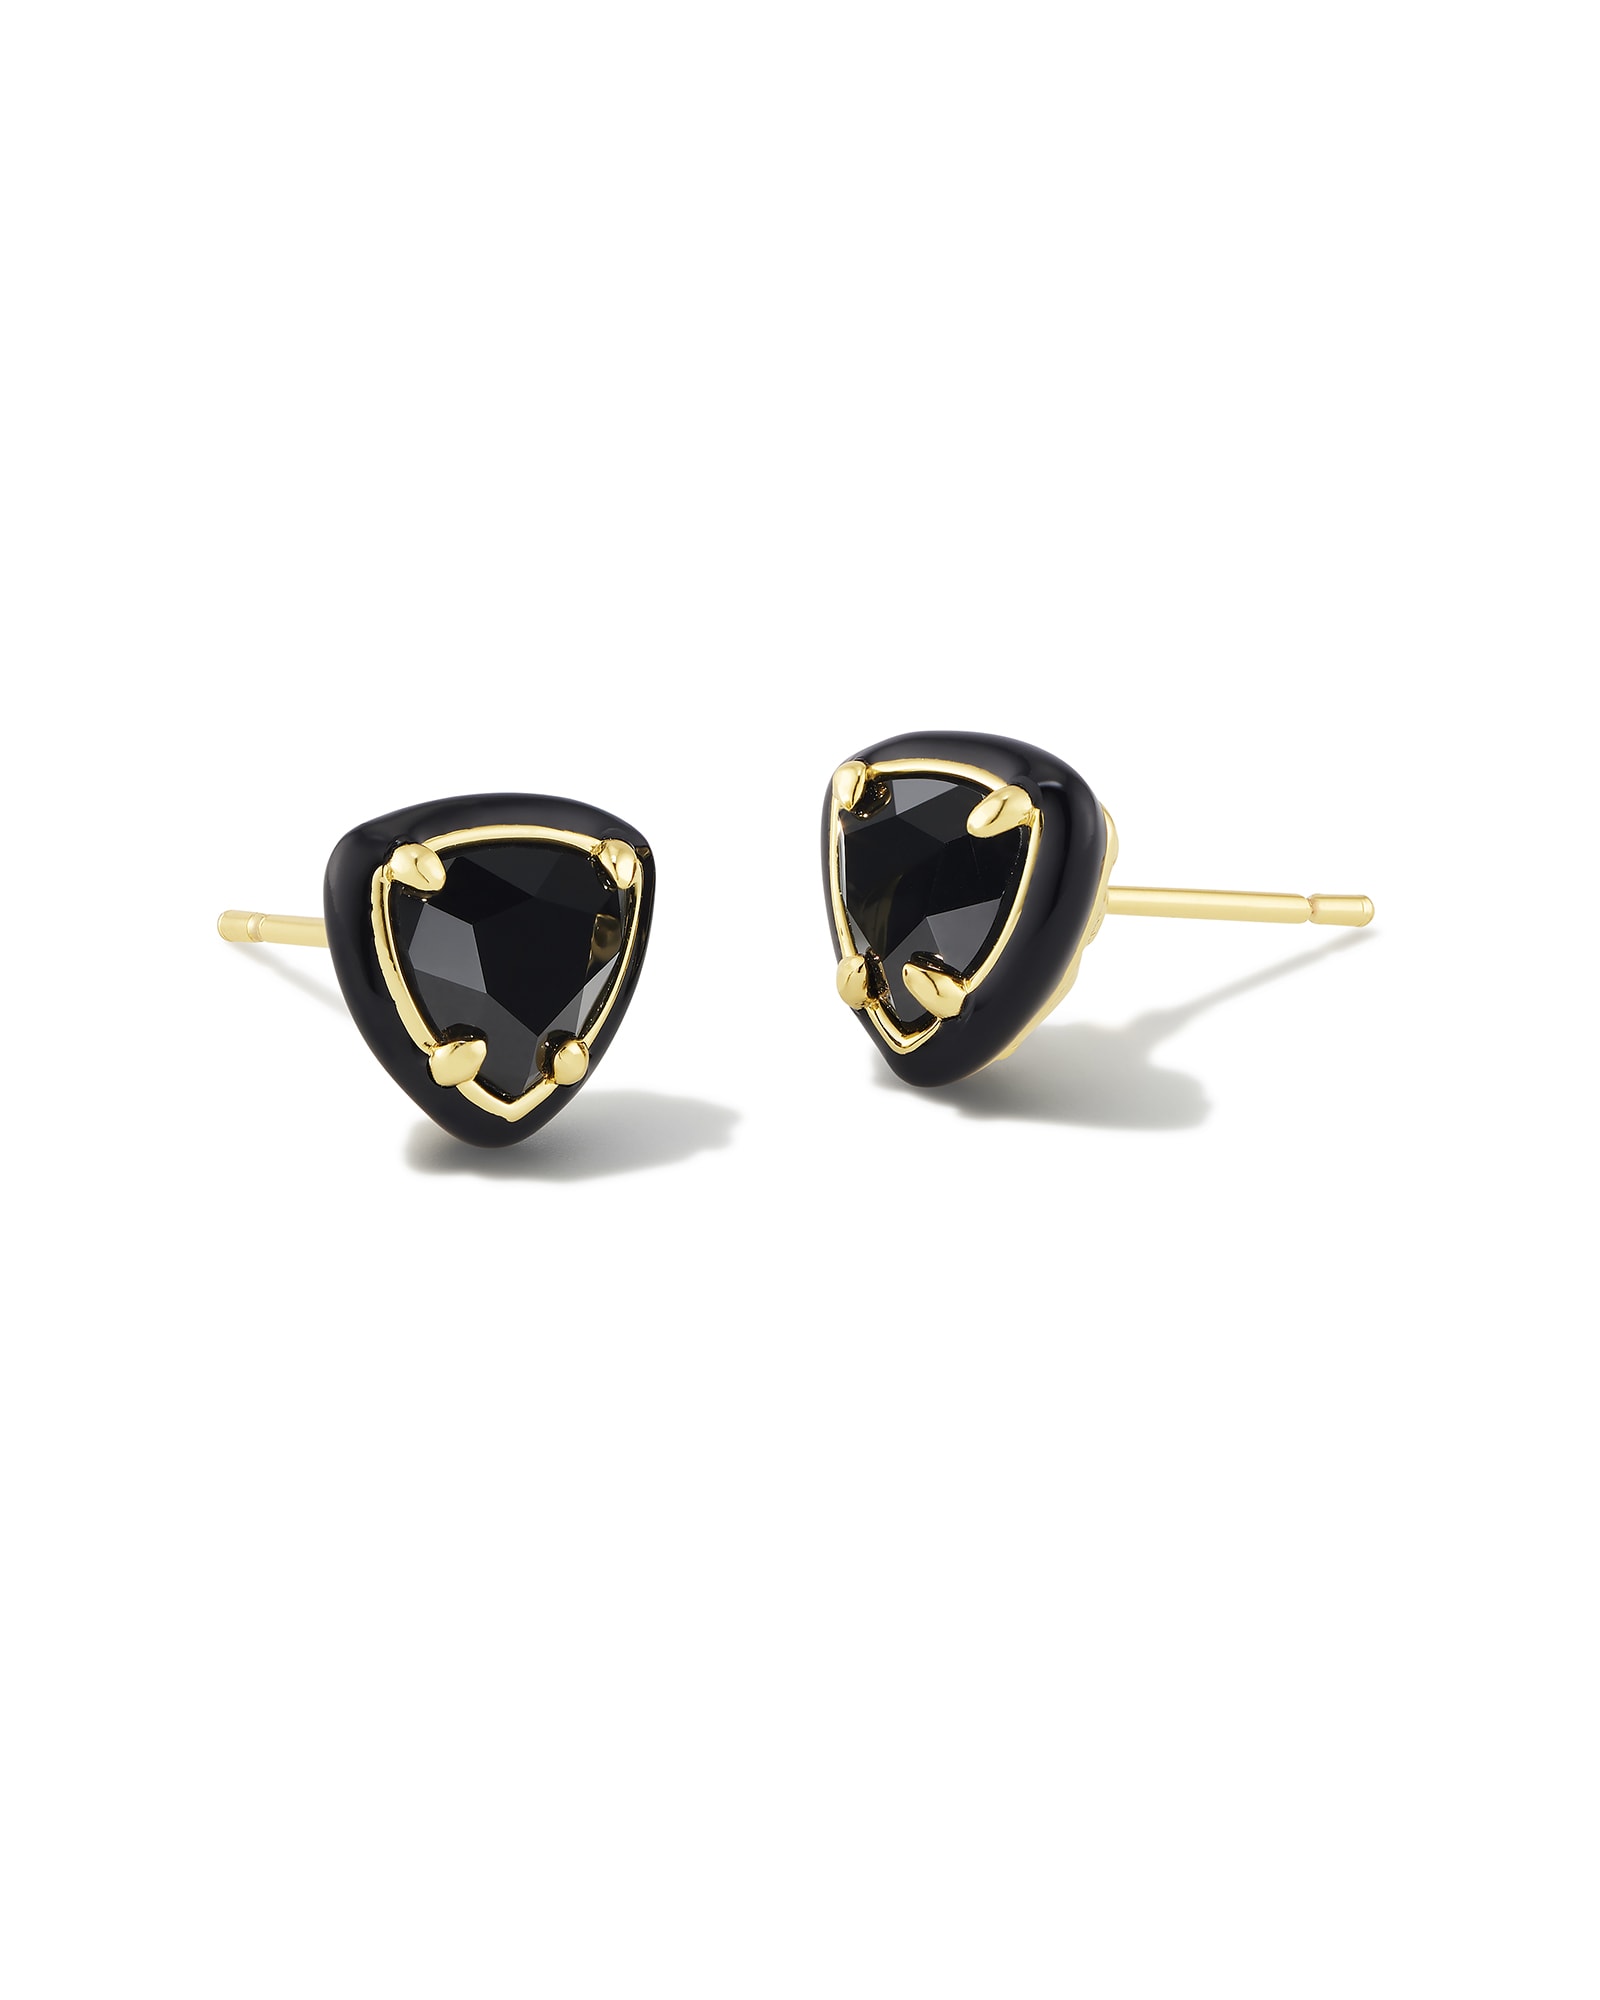 Kendra Scott Arden Gold Enamel Framed Stud Earrings in Black | Agate